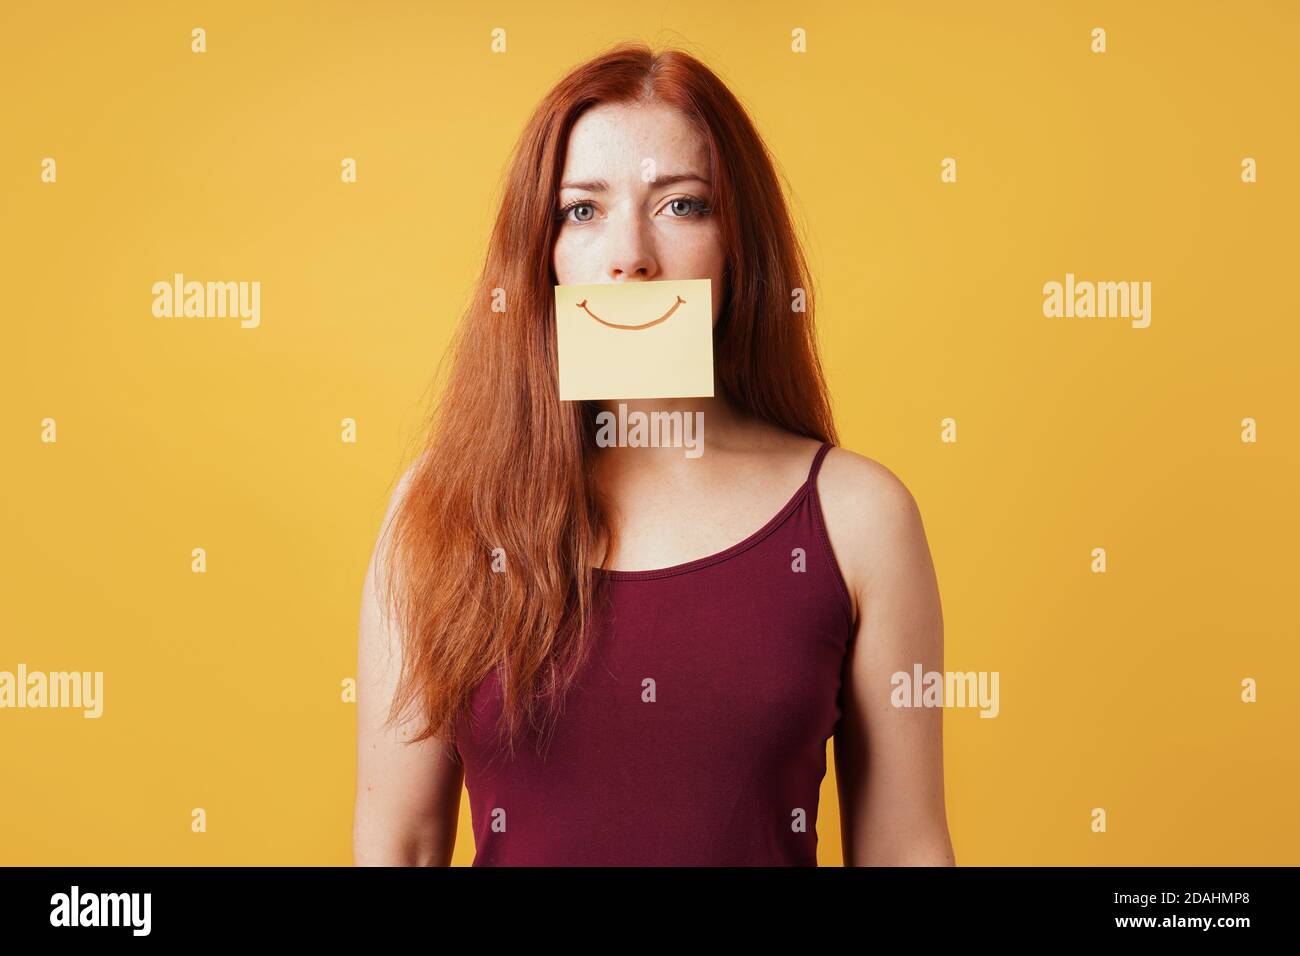 Junge Frau versteckt Traurigkeit oder Depression hinter gefälschten Lächeln gezeichnet Auf gelbem Notizpapier Stockfoto